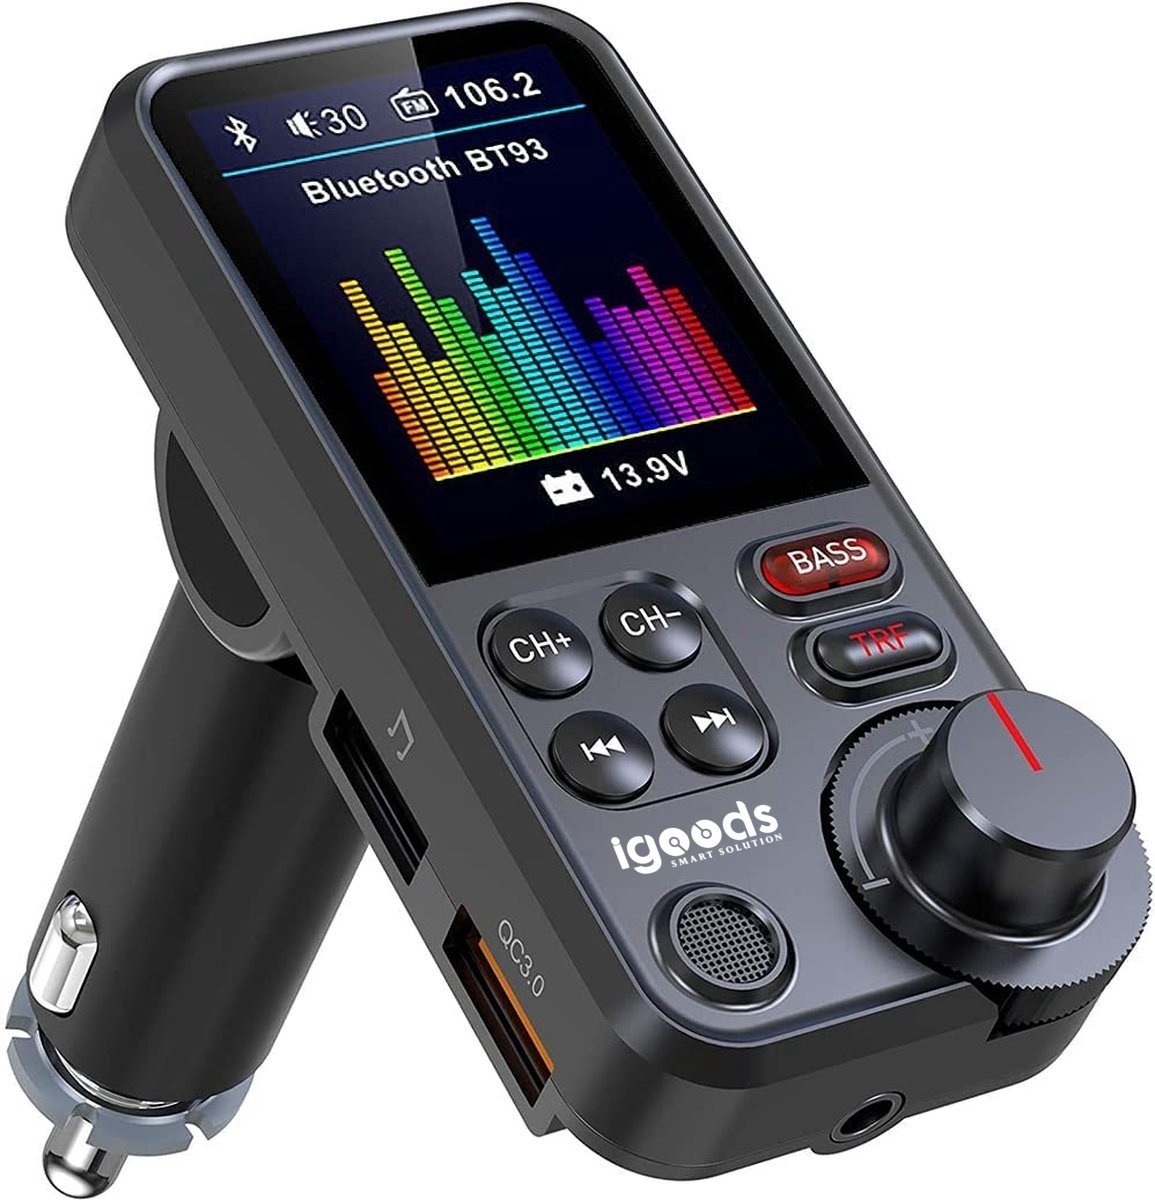 Bluetooth FM Transmitter - 170 ° Rotatie Auto Radio - met 1,8-inch kleurenscherm - handsfree bellen - Ondersteunt QC3.0 Opladen, Treble en Bass Sound Muziekspeler Devoordeligedrogisterij.nl